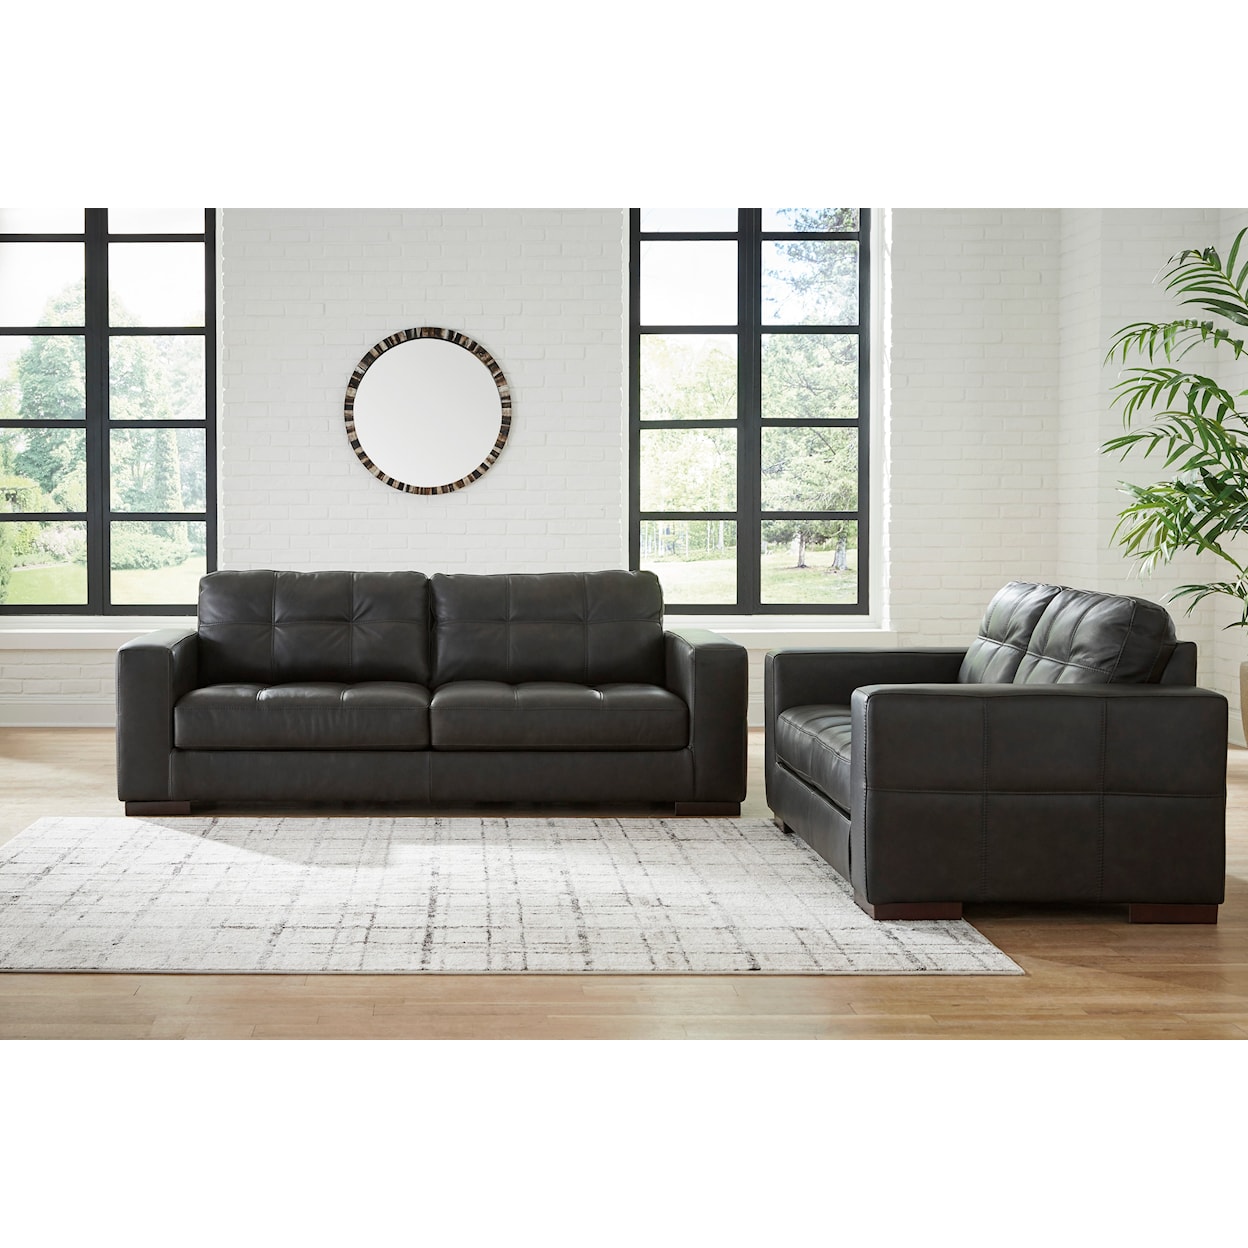 Ashley Furniture Signature Design Luigi Living Room Set